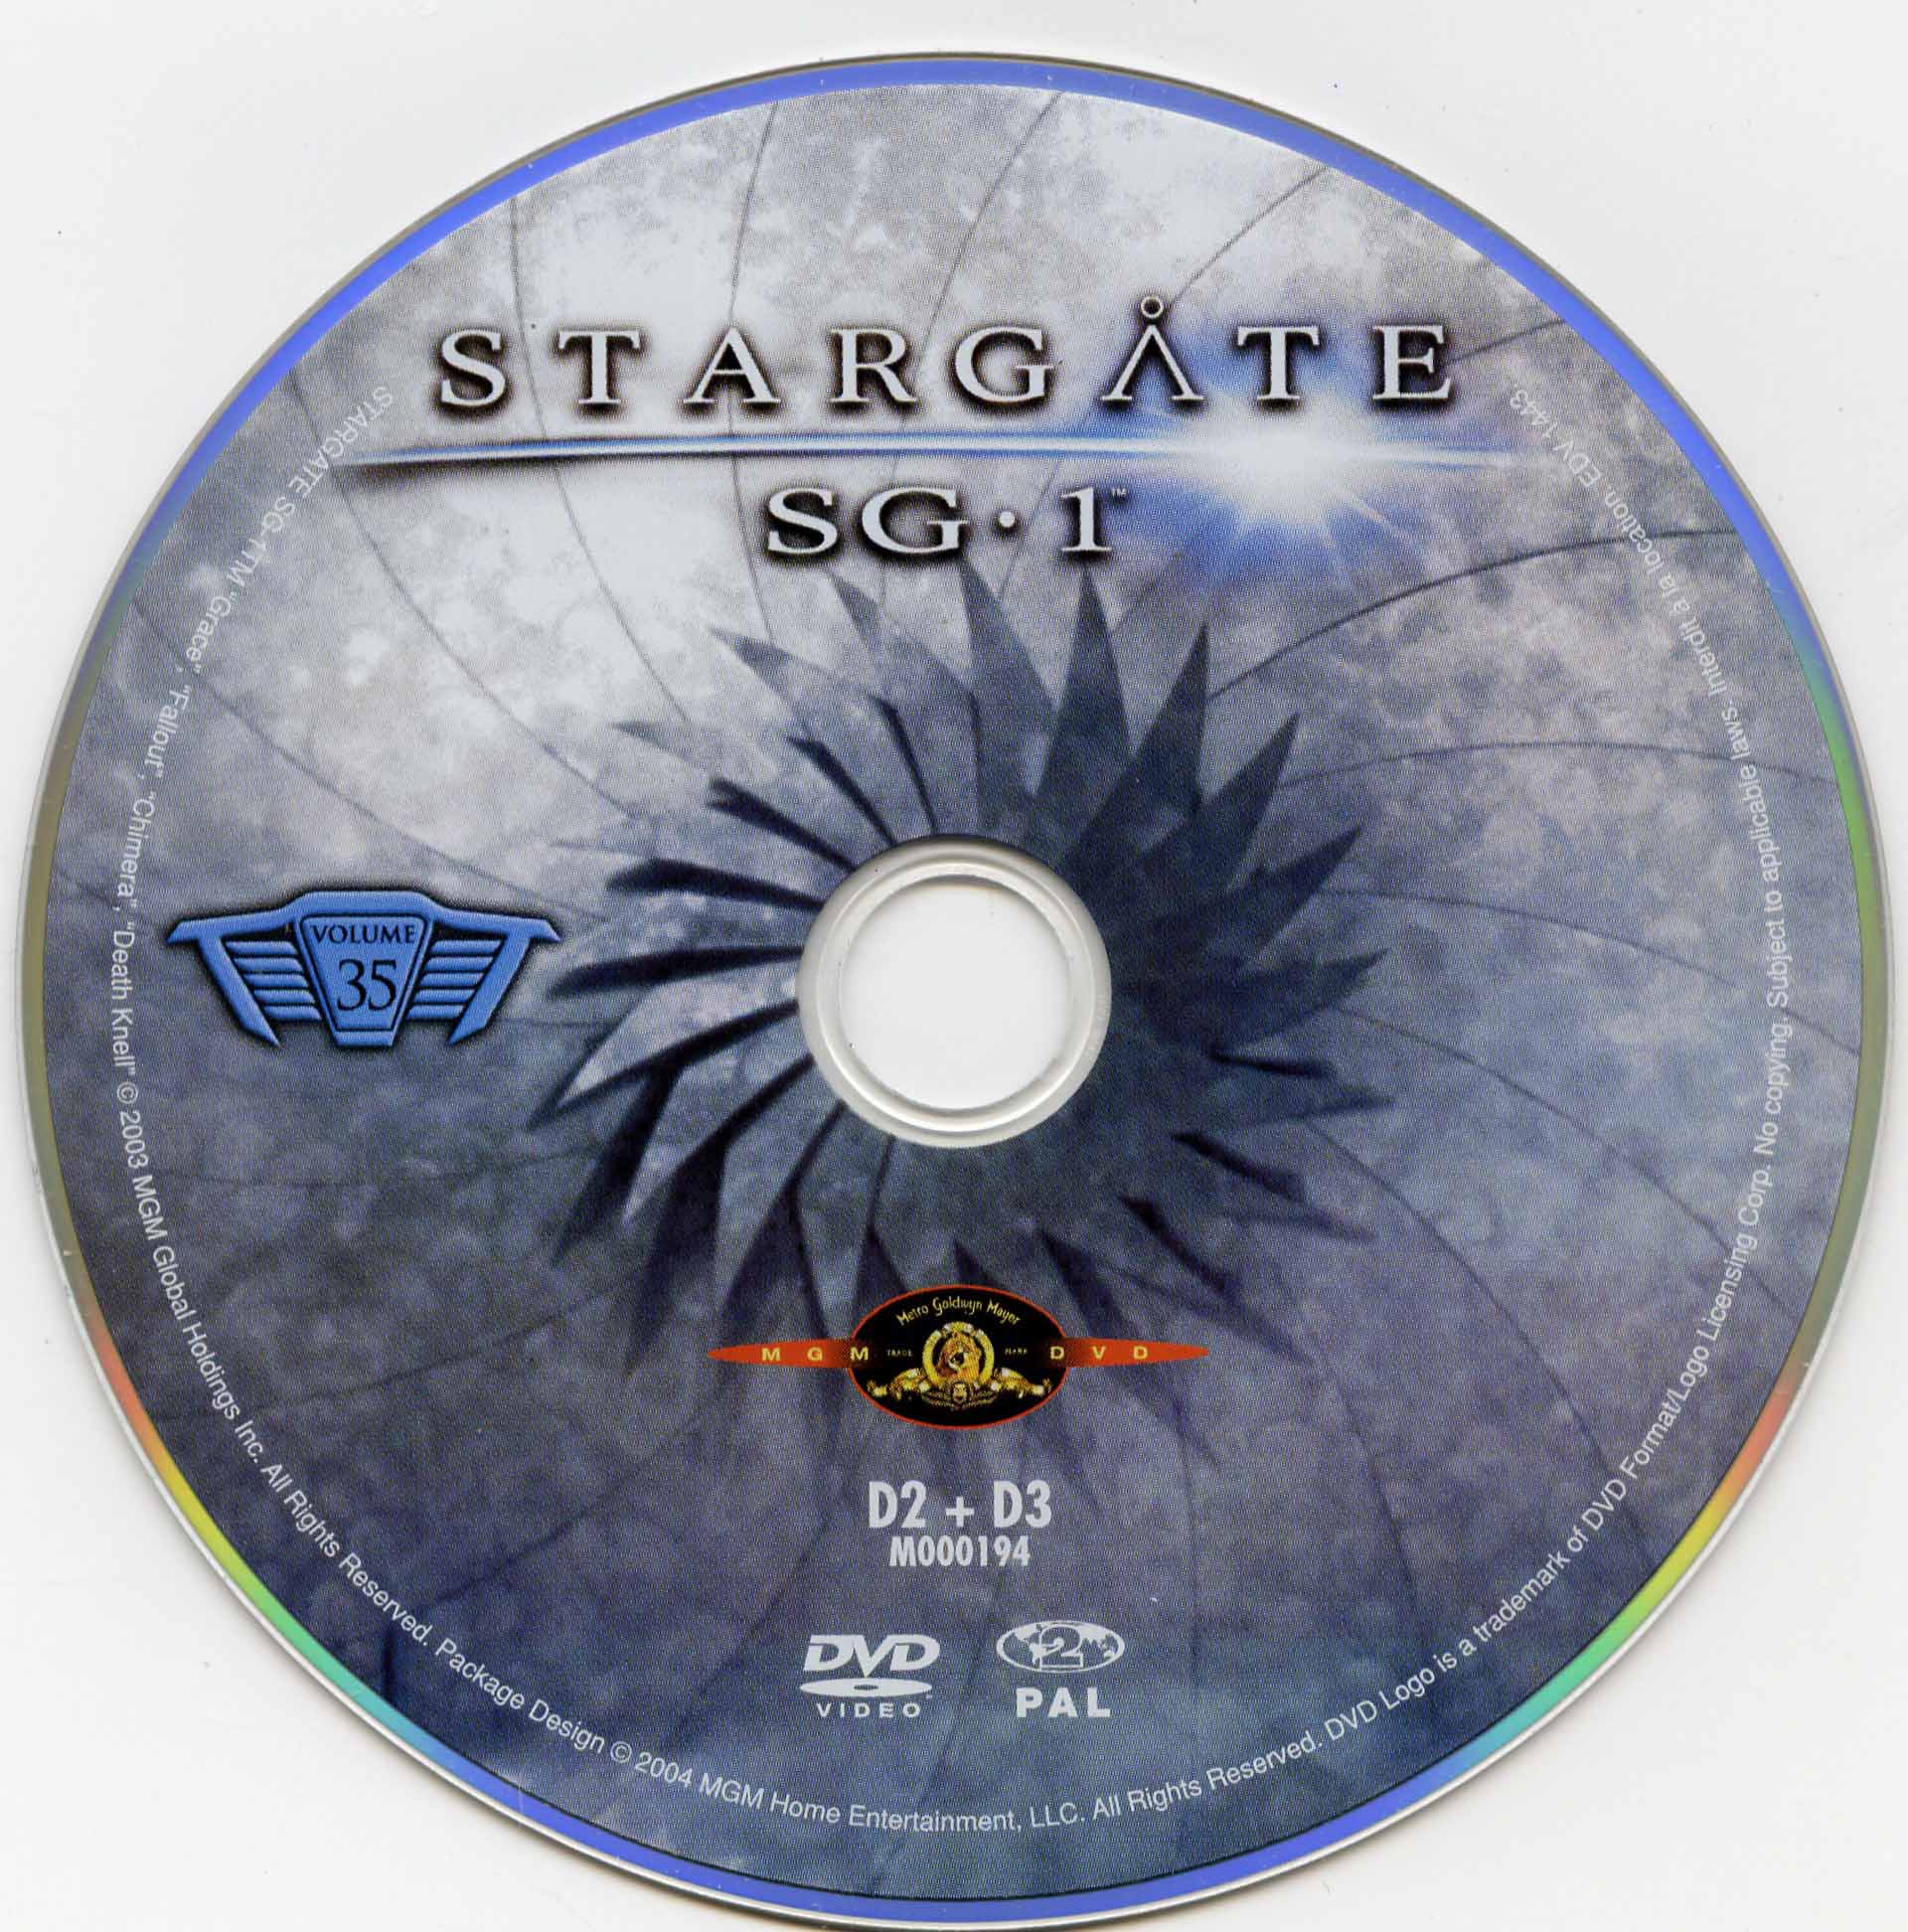 Stargate SG1 vol 35